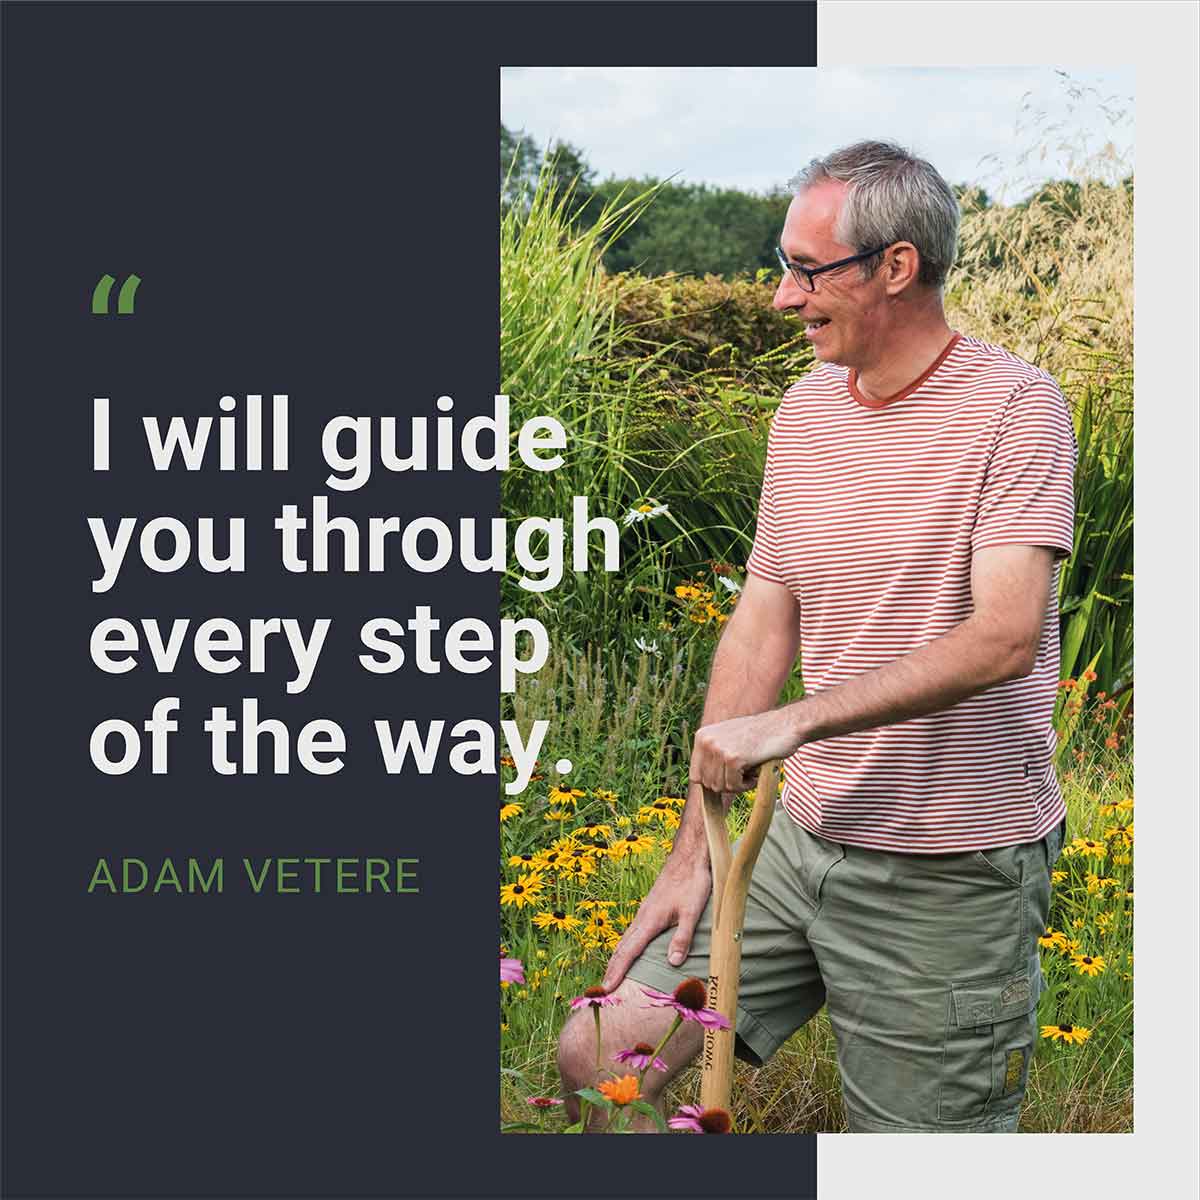 Adam Vetere